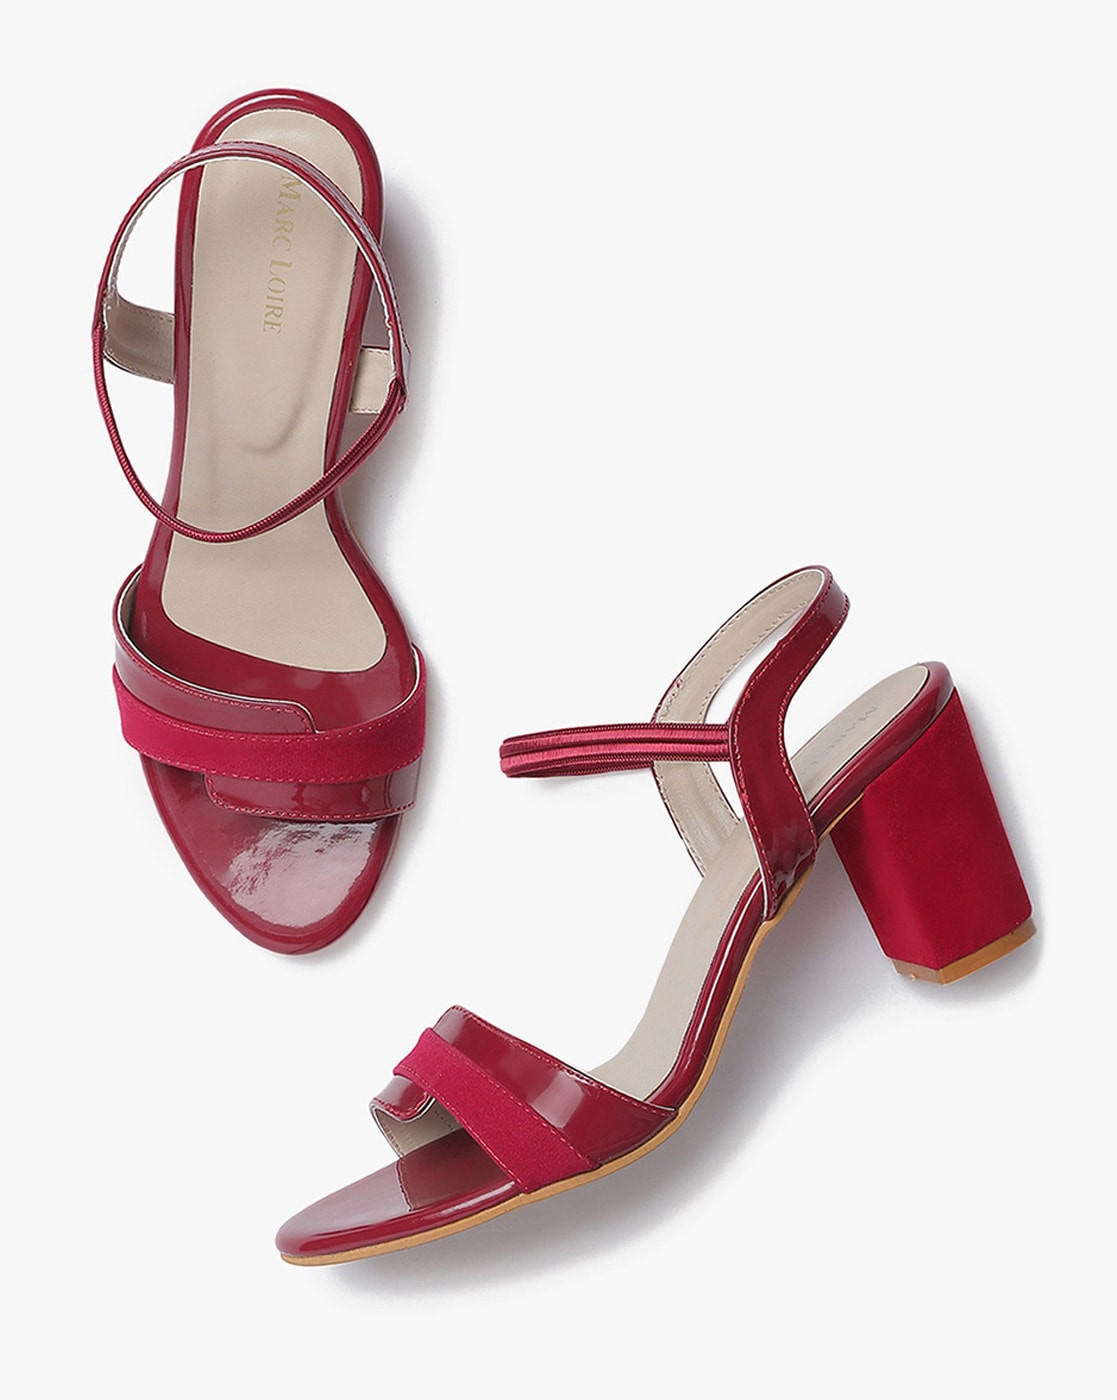 Buy Women Red Casual Sandals Online - 424216 | Allen Solly